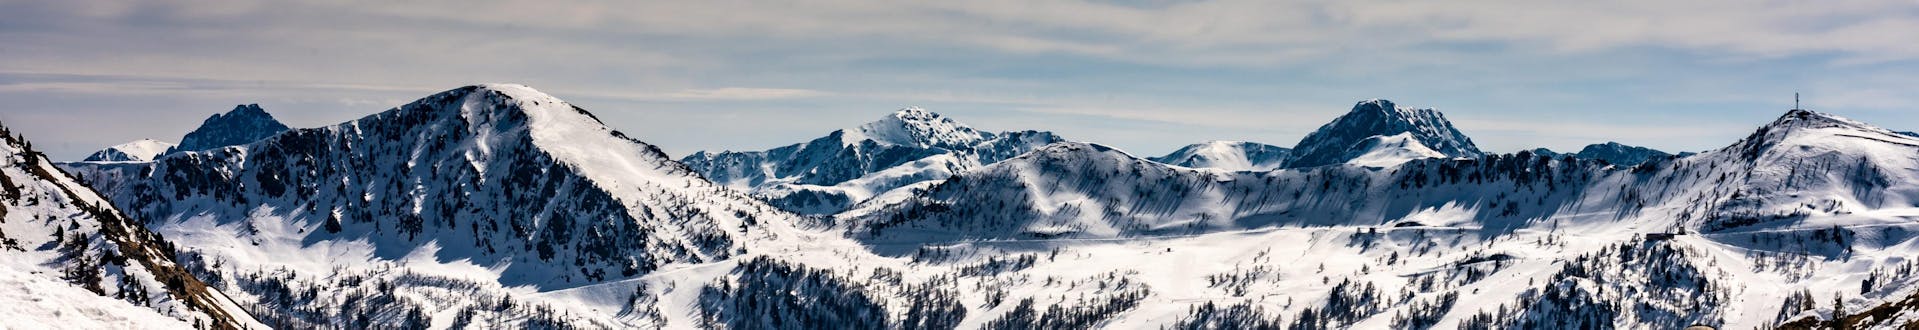 Ein Panoramablick über die Berggipfel im französischen Skigebiet Isola 2000, wo Personen, die das Skifahren lernen möchten, bei den örtlichen Skischulen einen Skikurs buchen können.